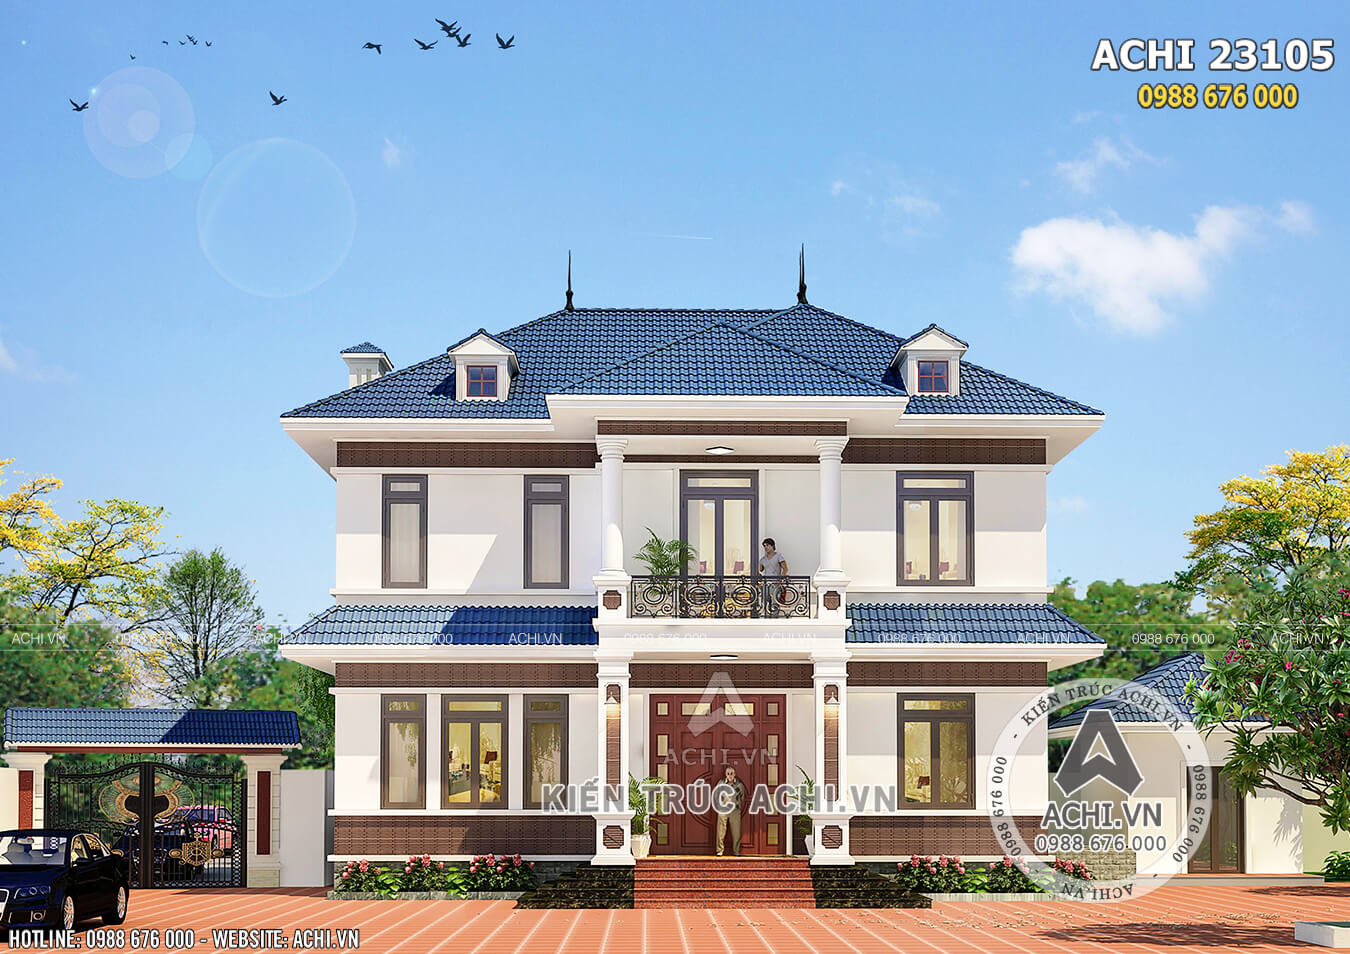 Mẫu thiết kế biệt thự 2 tầng mái thái đẹp tại Đồng Nai